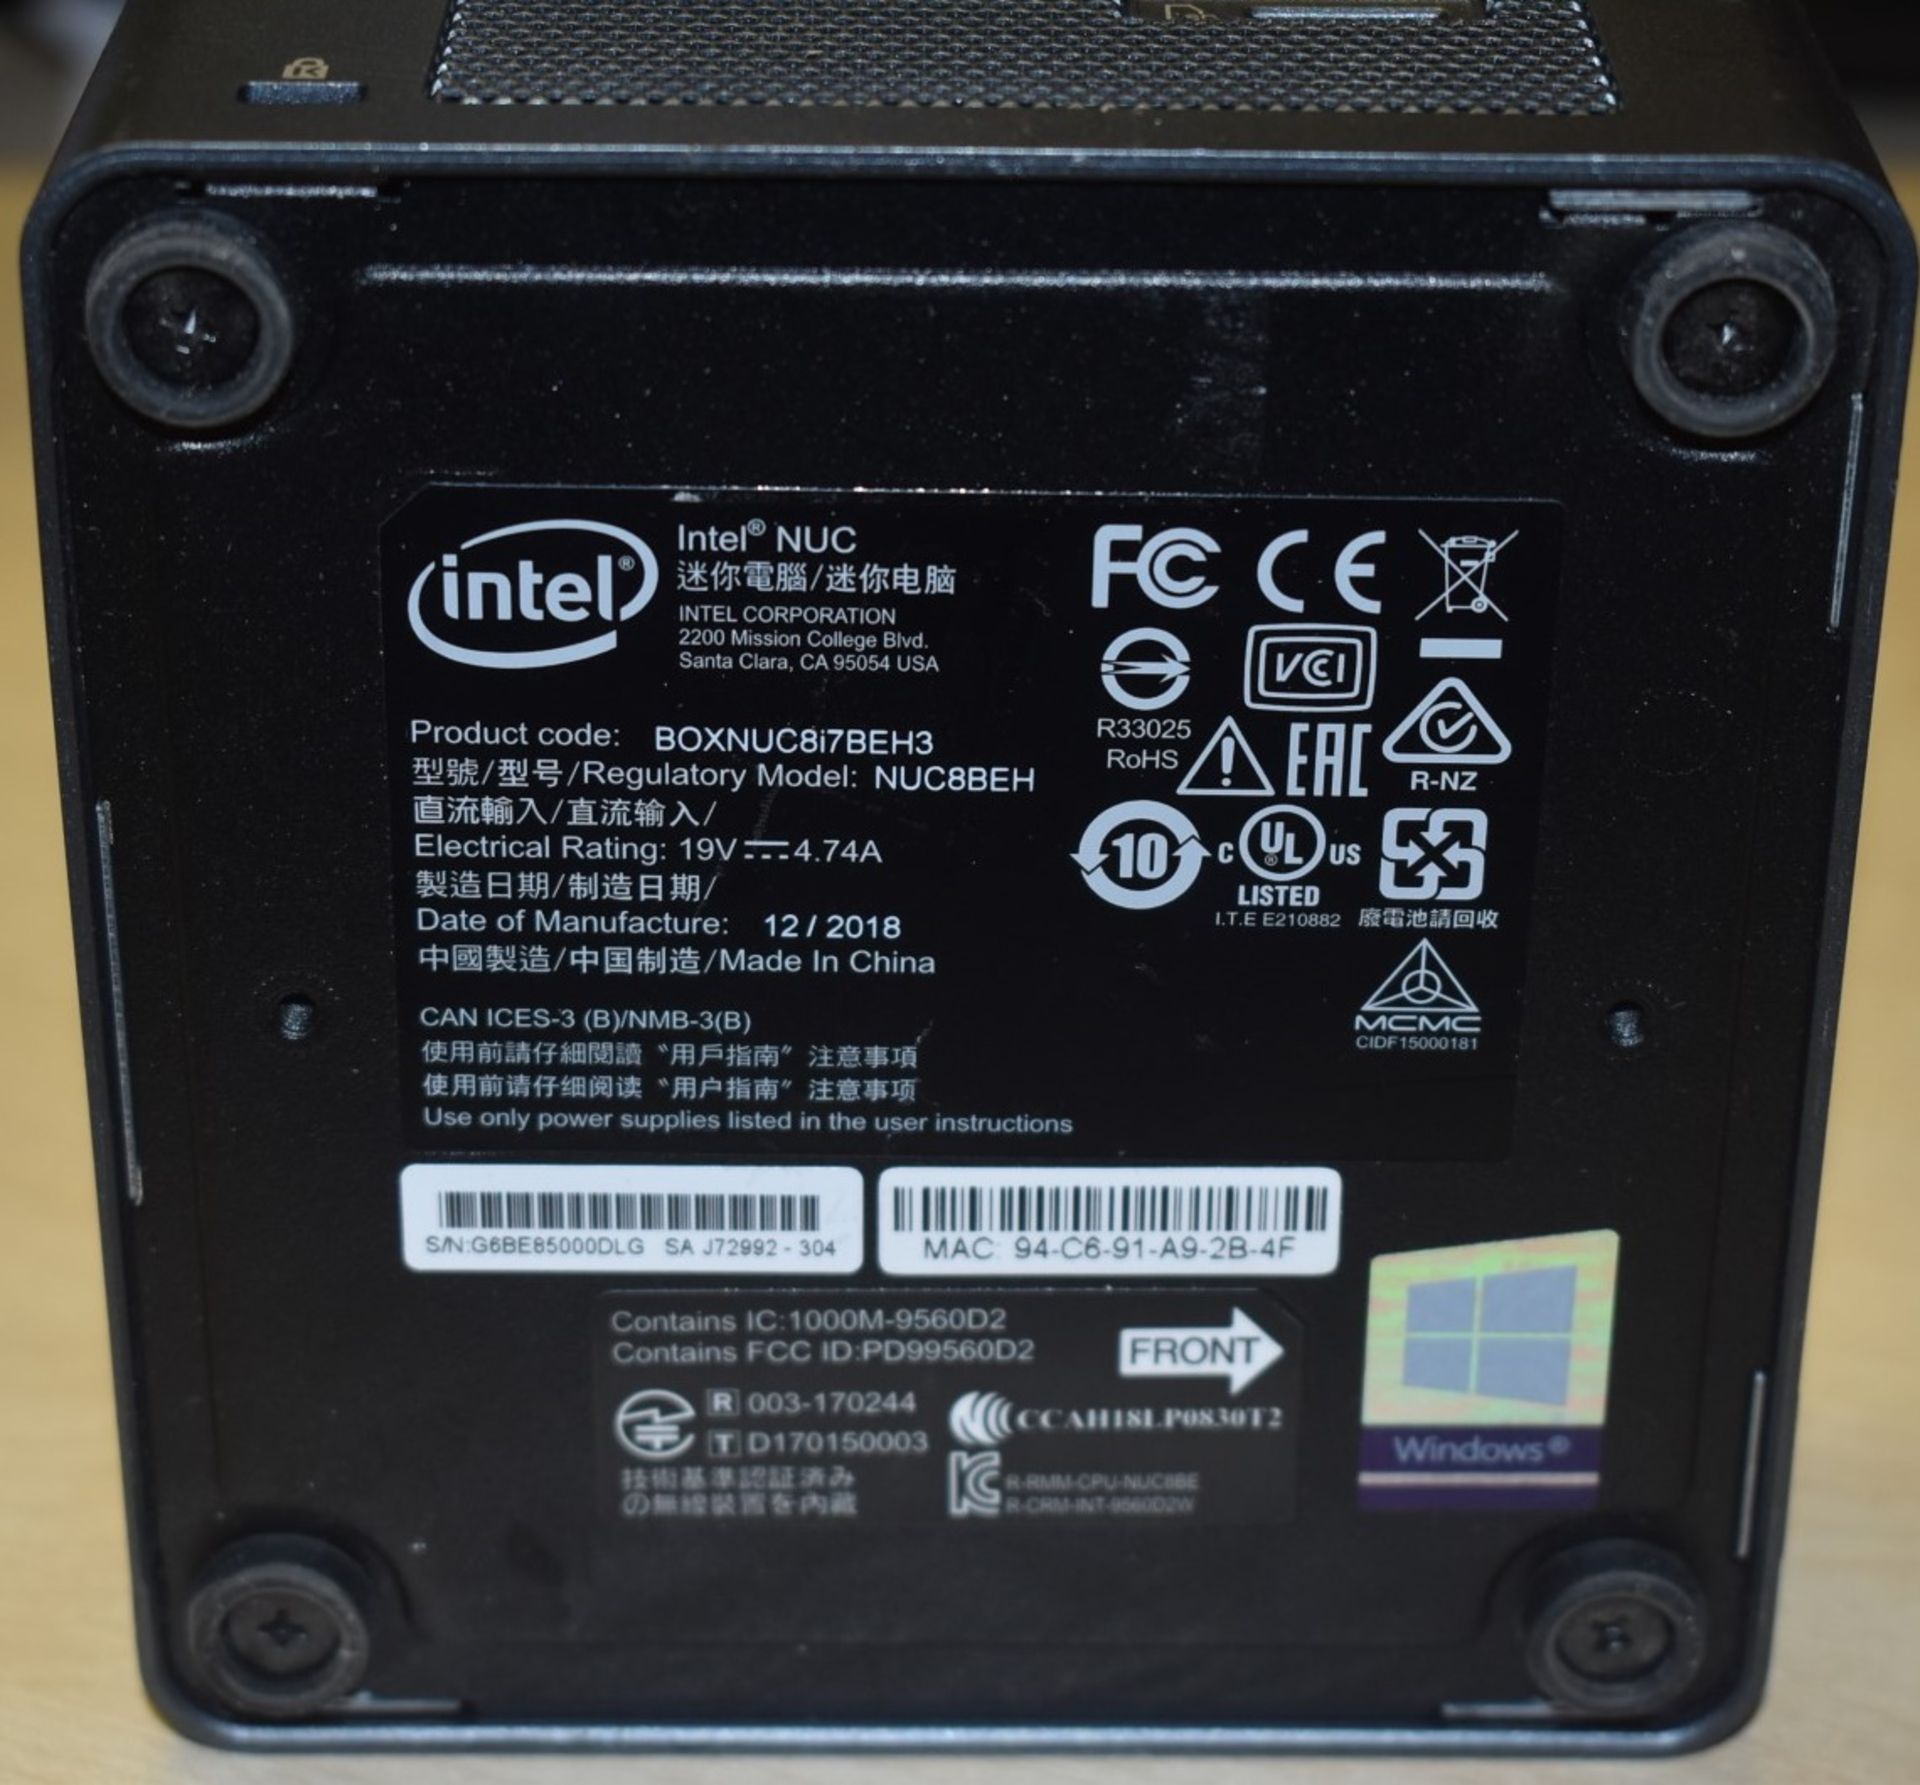 1 x Intel NUC Mini PC Featuring Intel i7-8559u Quad Core 3.7Ghz Processor, 8GB DDR4 2400Mhz Ram, - Image 8 of 8